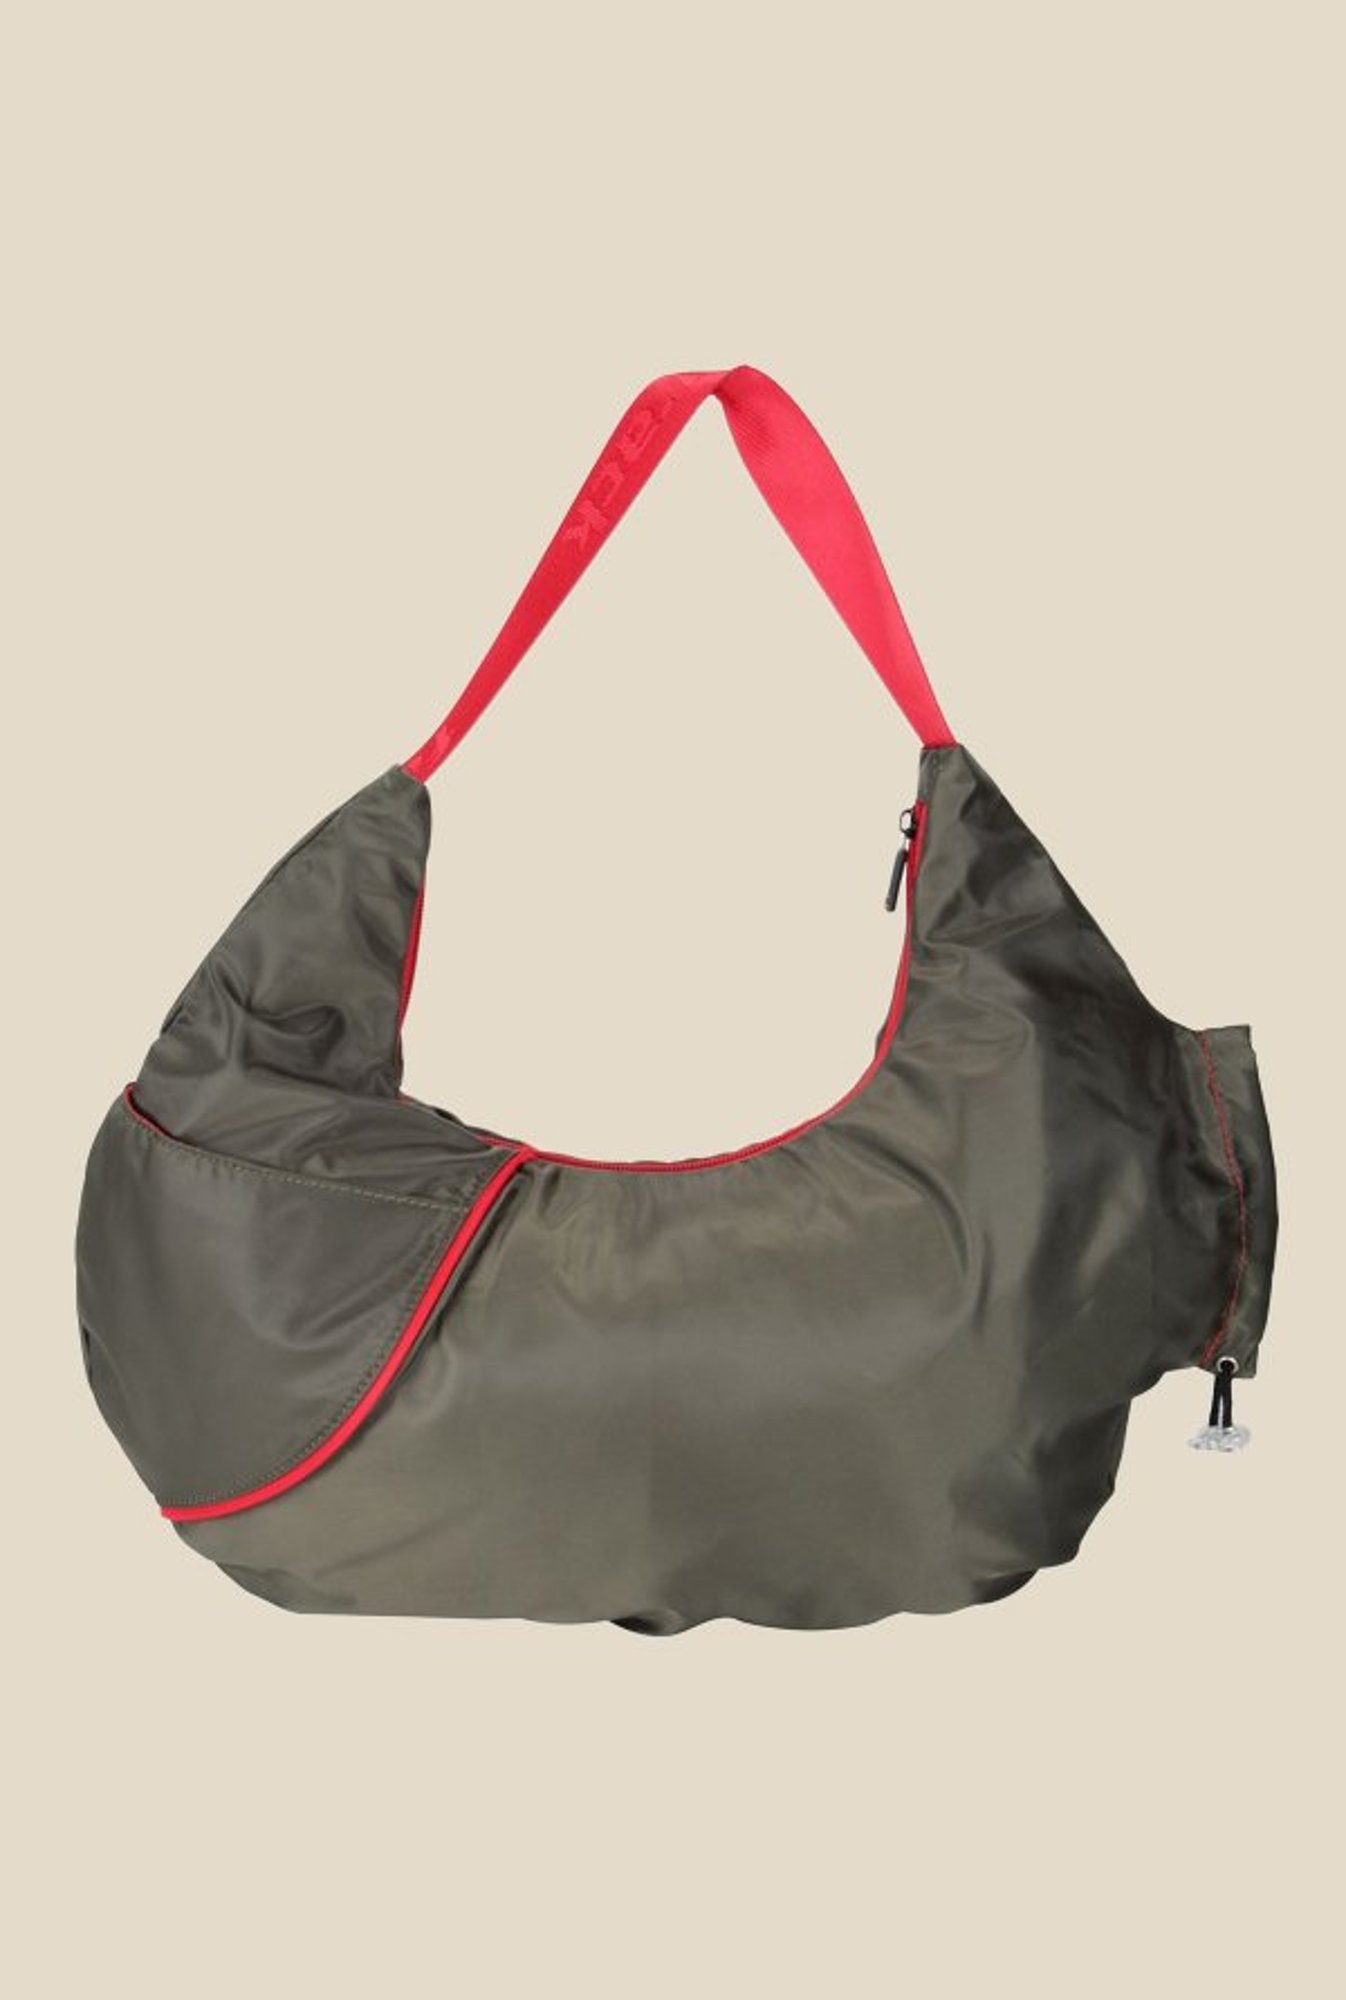 Buy Fastrack Black & Red Sling Bag - Handbags for Women 547612 | Myntra